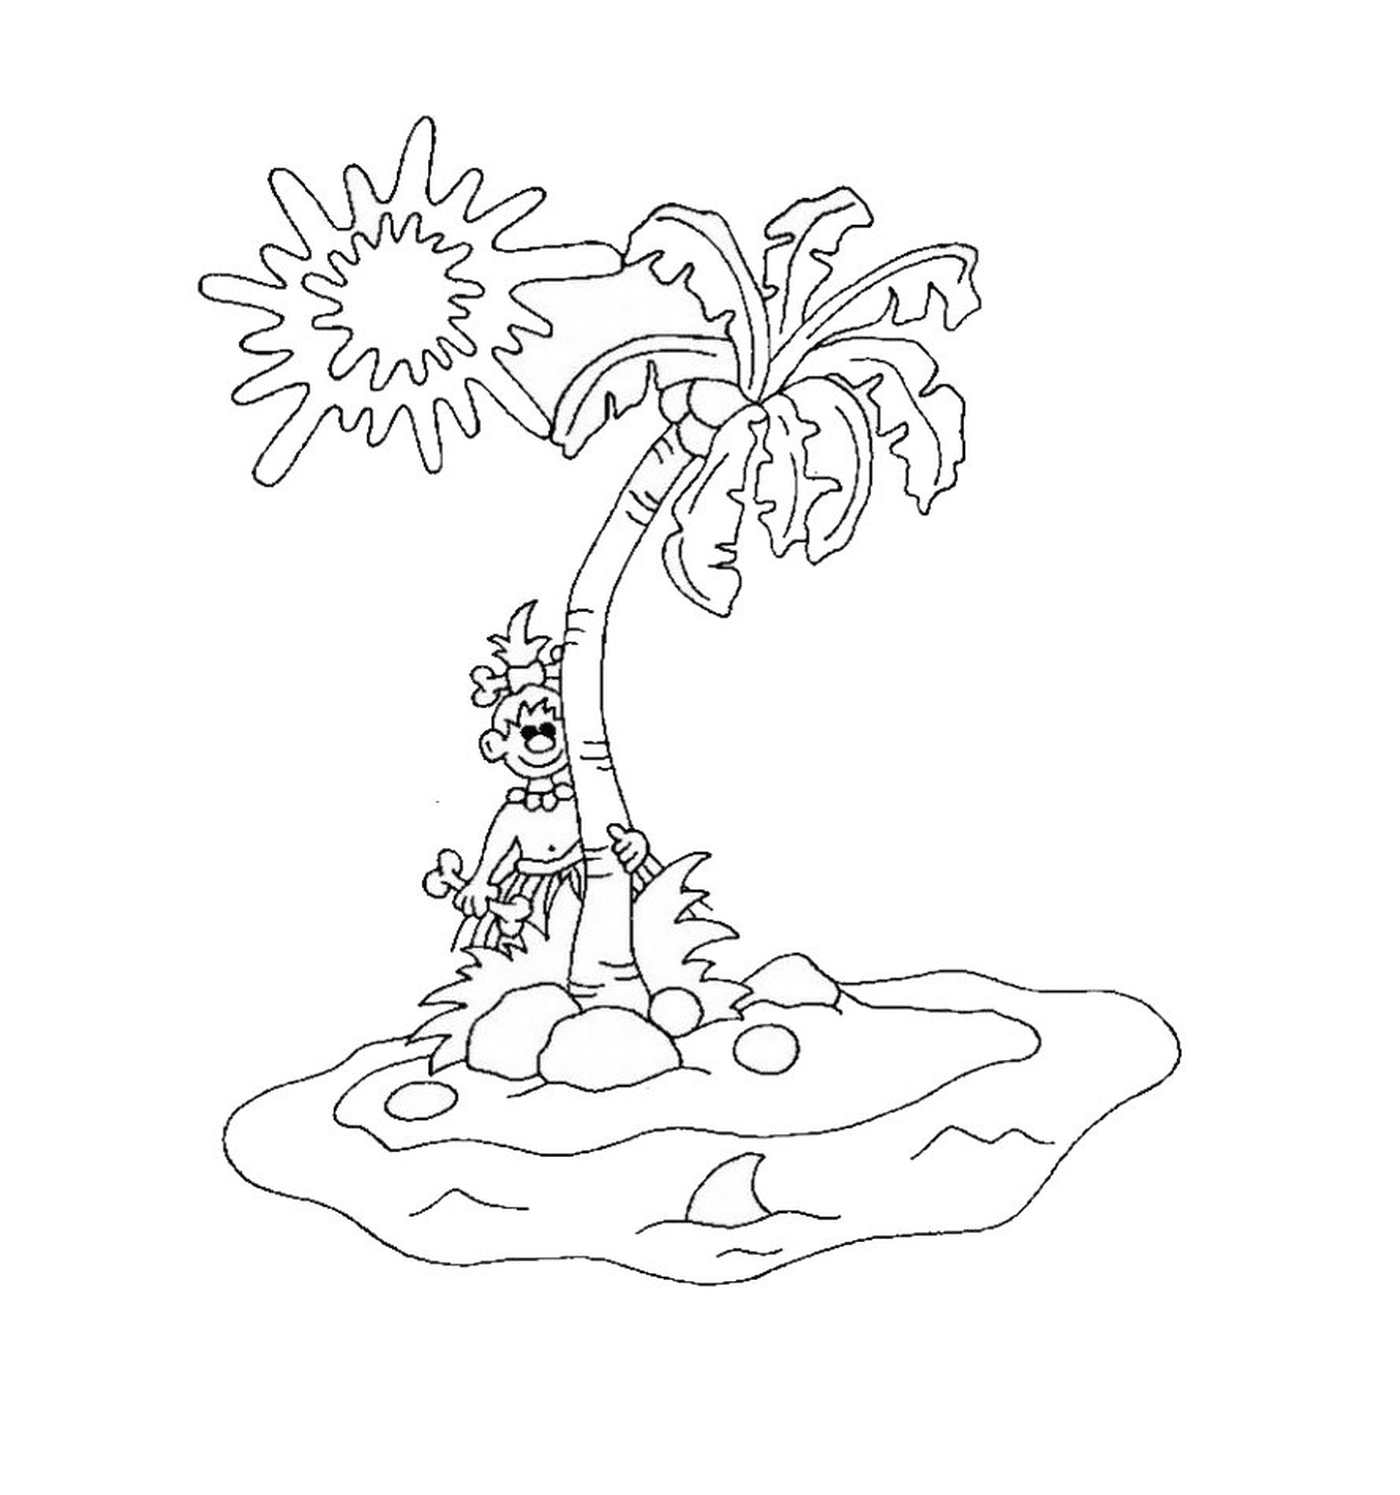  एक बंजर द्वीप पर खजूर के पेड़ 